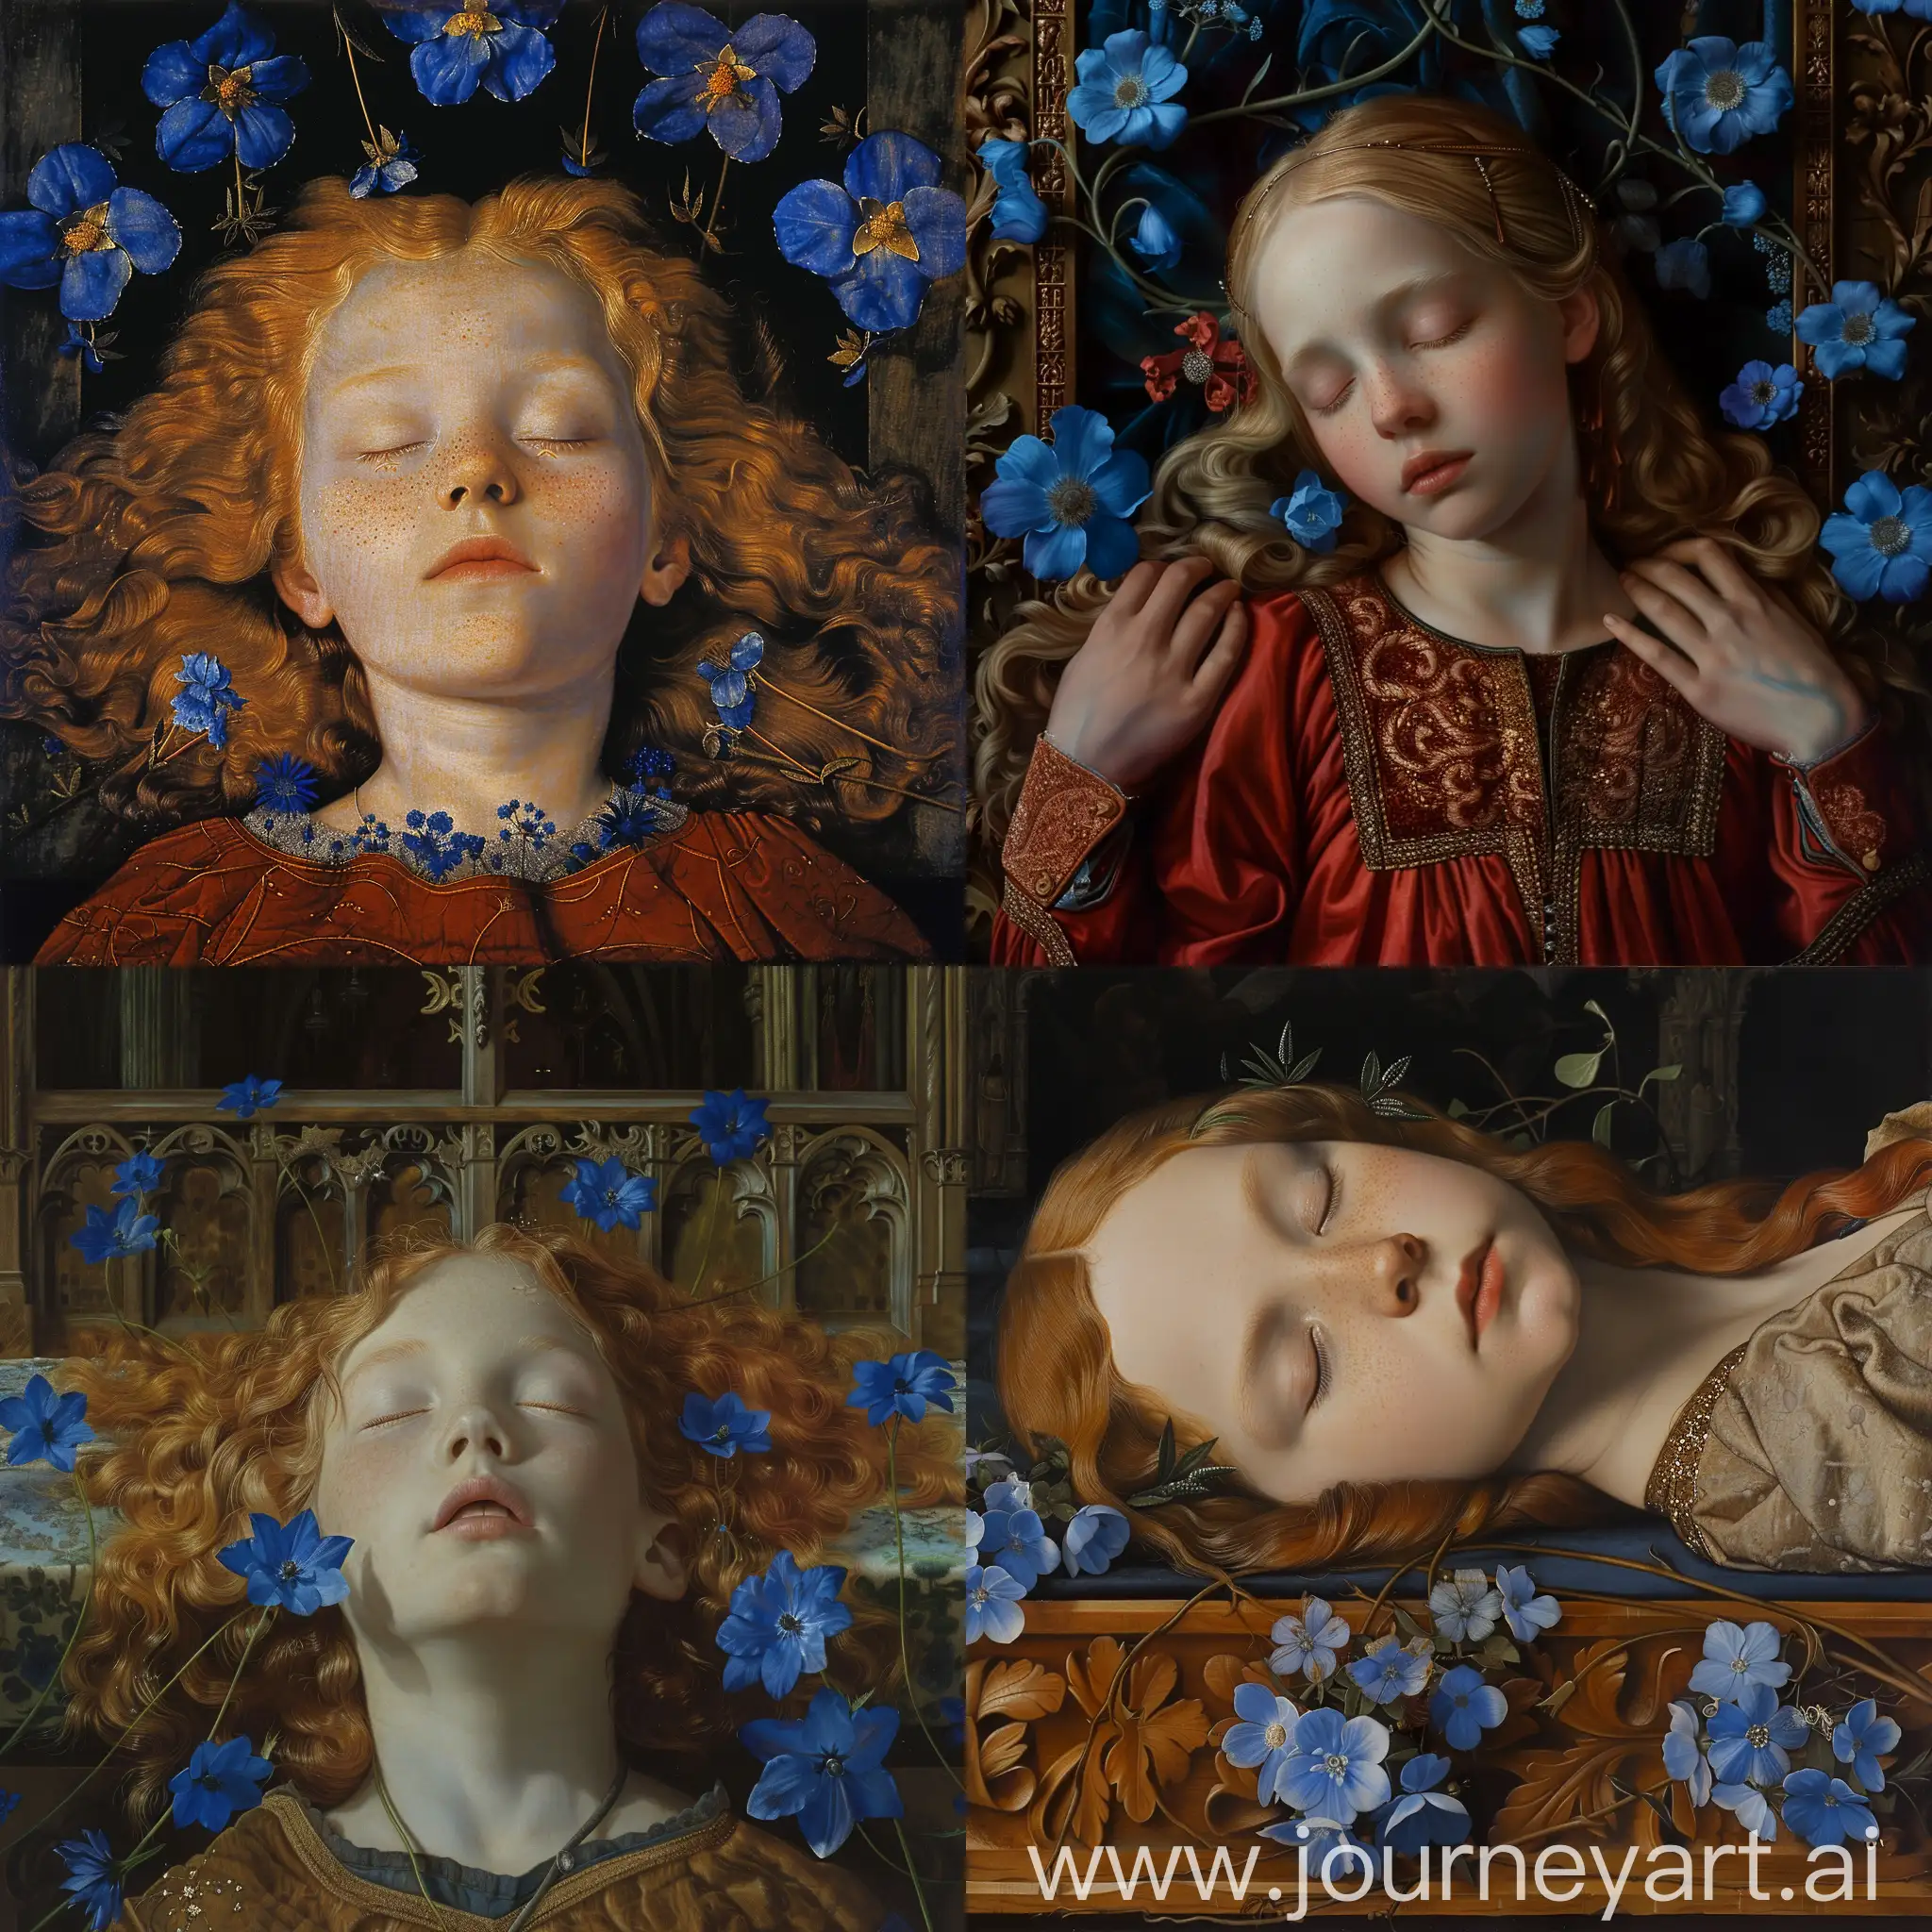 1543 год беловолосая девушка лежит на алтаре с закрытыми глазами с синими цветочками 








